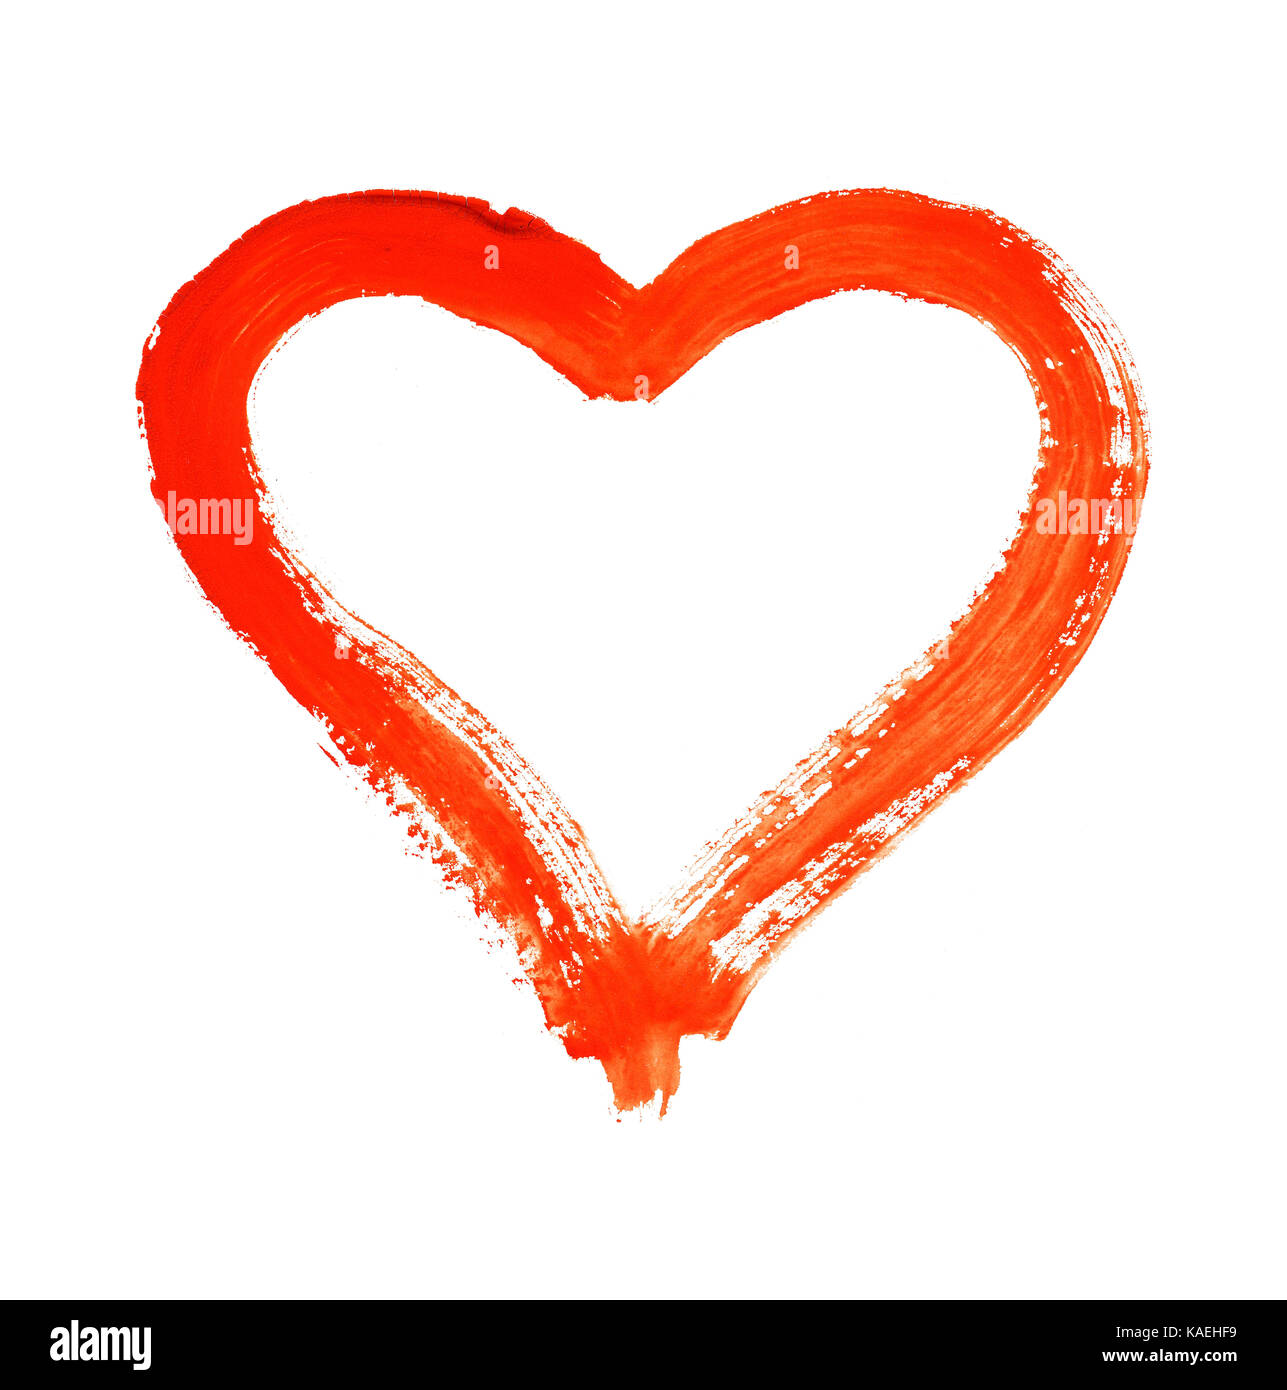 Coeur - symbole de l'amour - aquarelle sur papier - isolé Banque D'Images